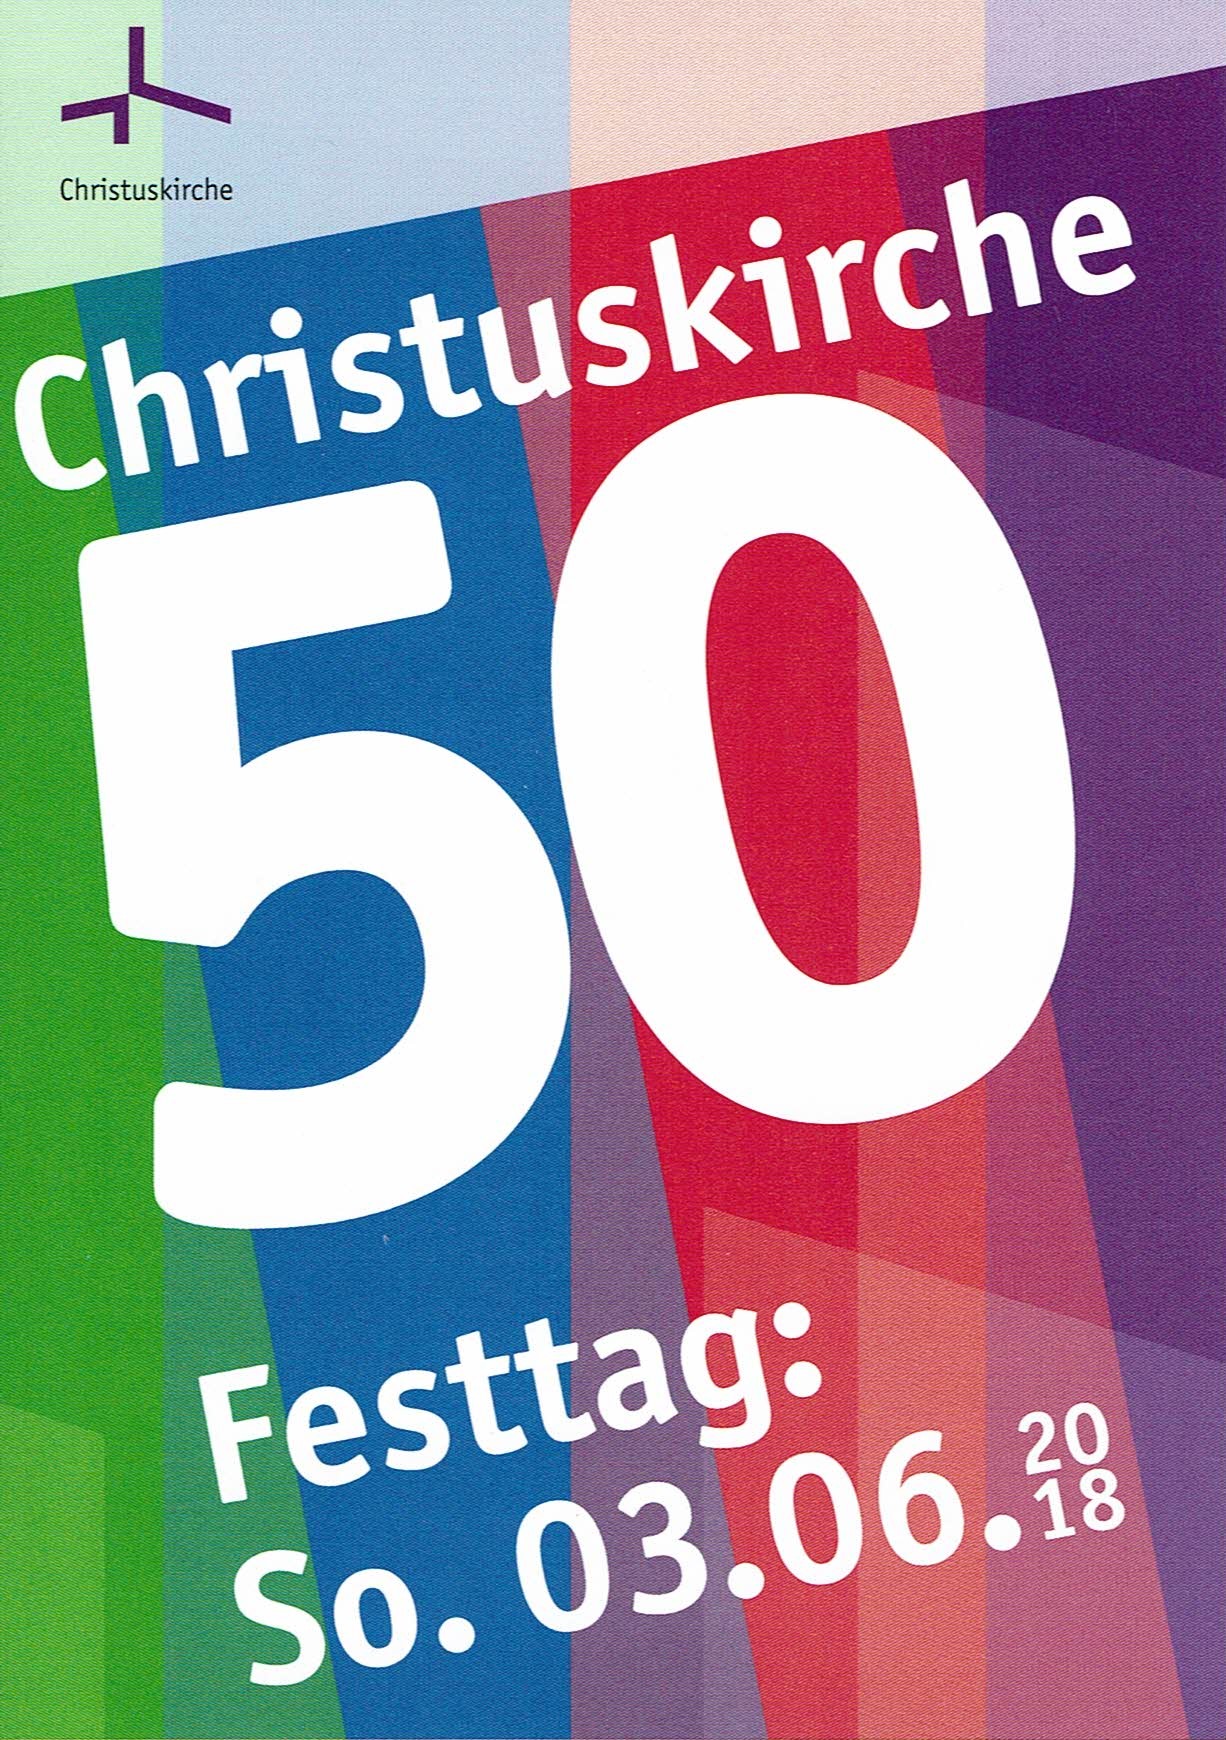 Foto 50 Jahre Christuskirche